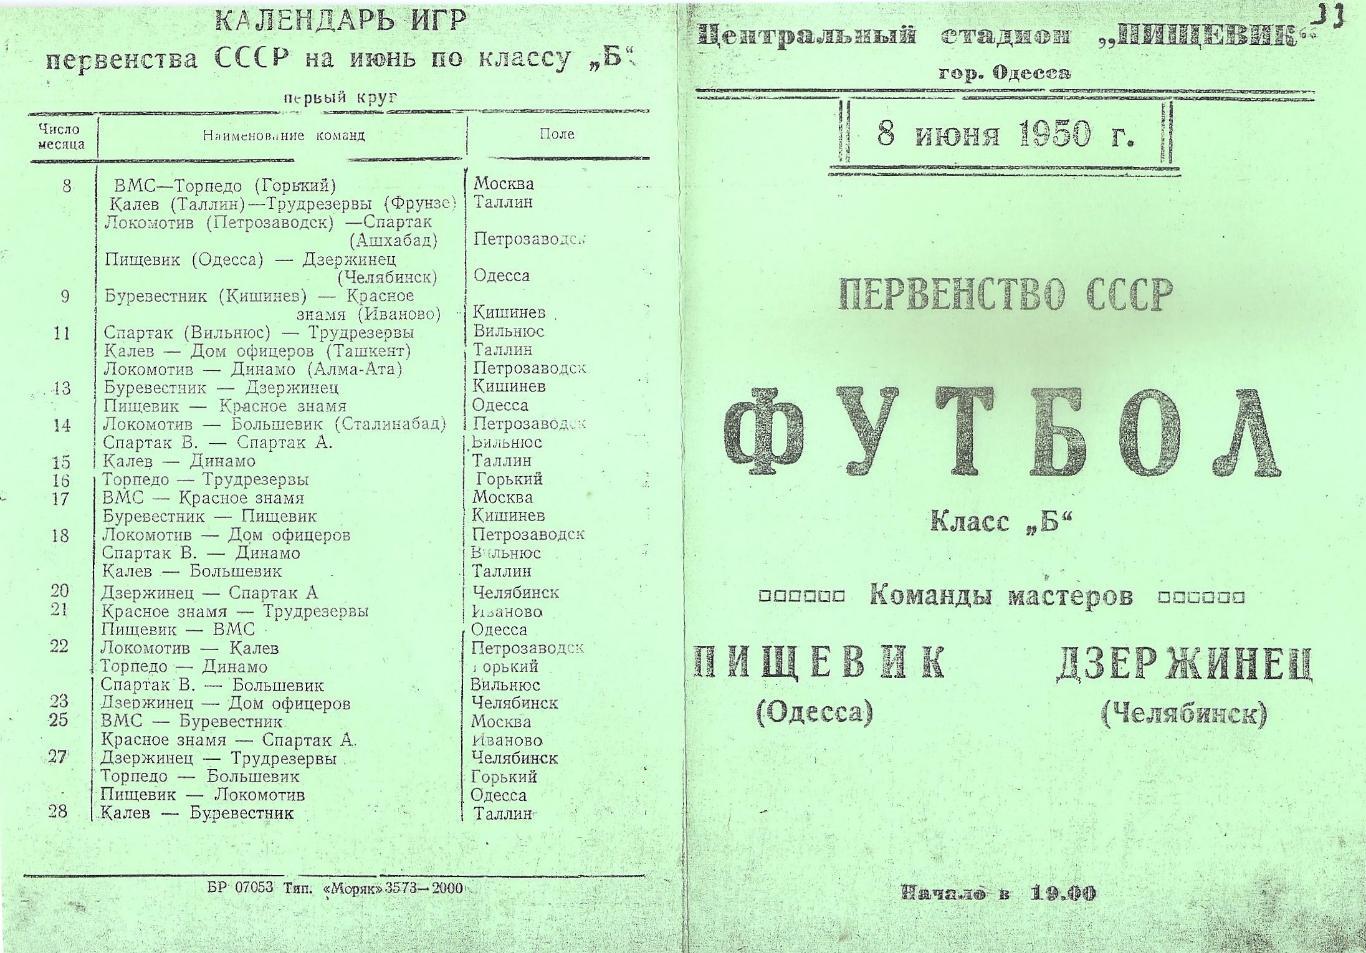 Пищевик Одесса - Дзержинец Челябинск 8.06.1950г. (копия)